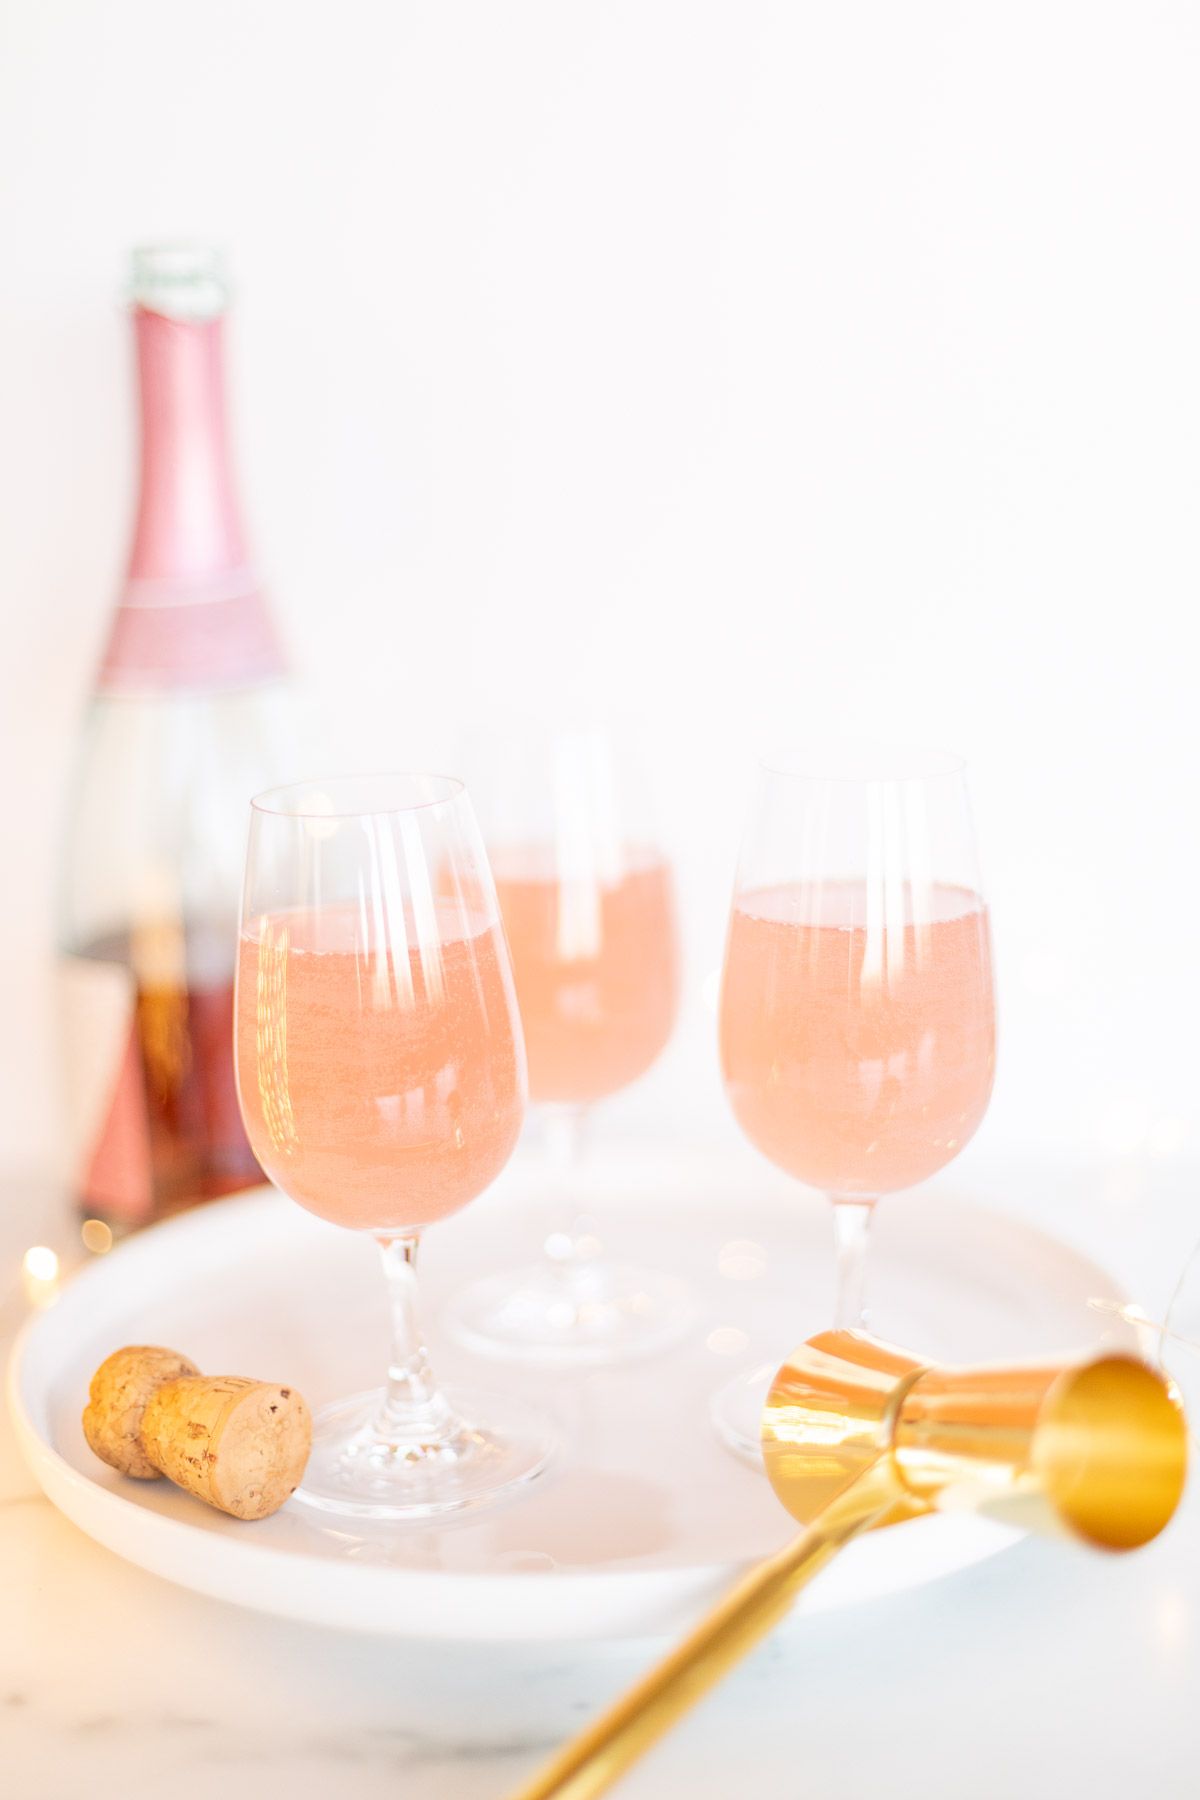 3杯香槟玛格丽塔酒在一个白色盘子，金五彩纸屑周围的金五彩纸屑和一个瓶桃红色香槟在背景中GydF4y2Ba